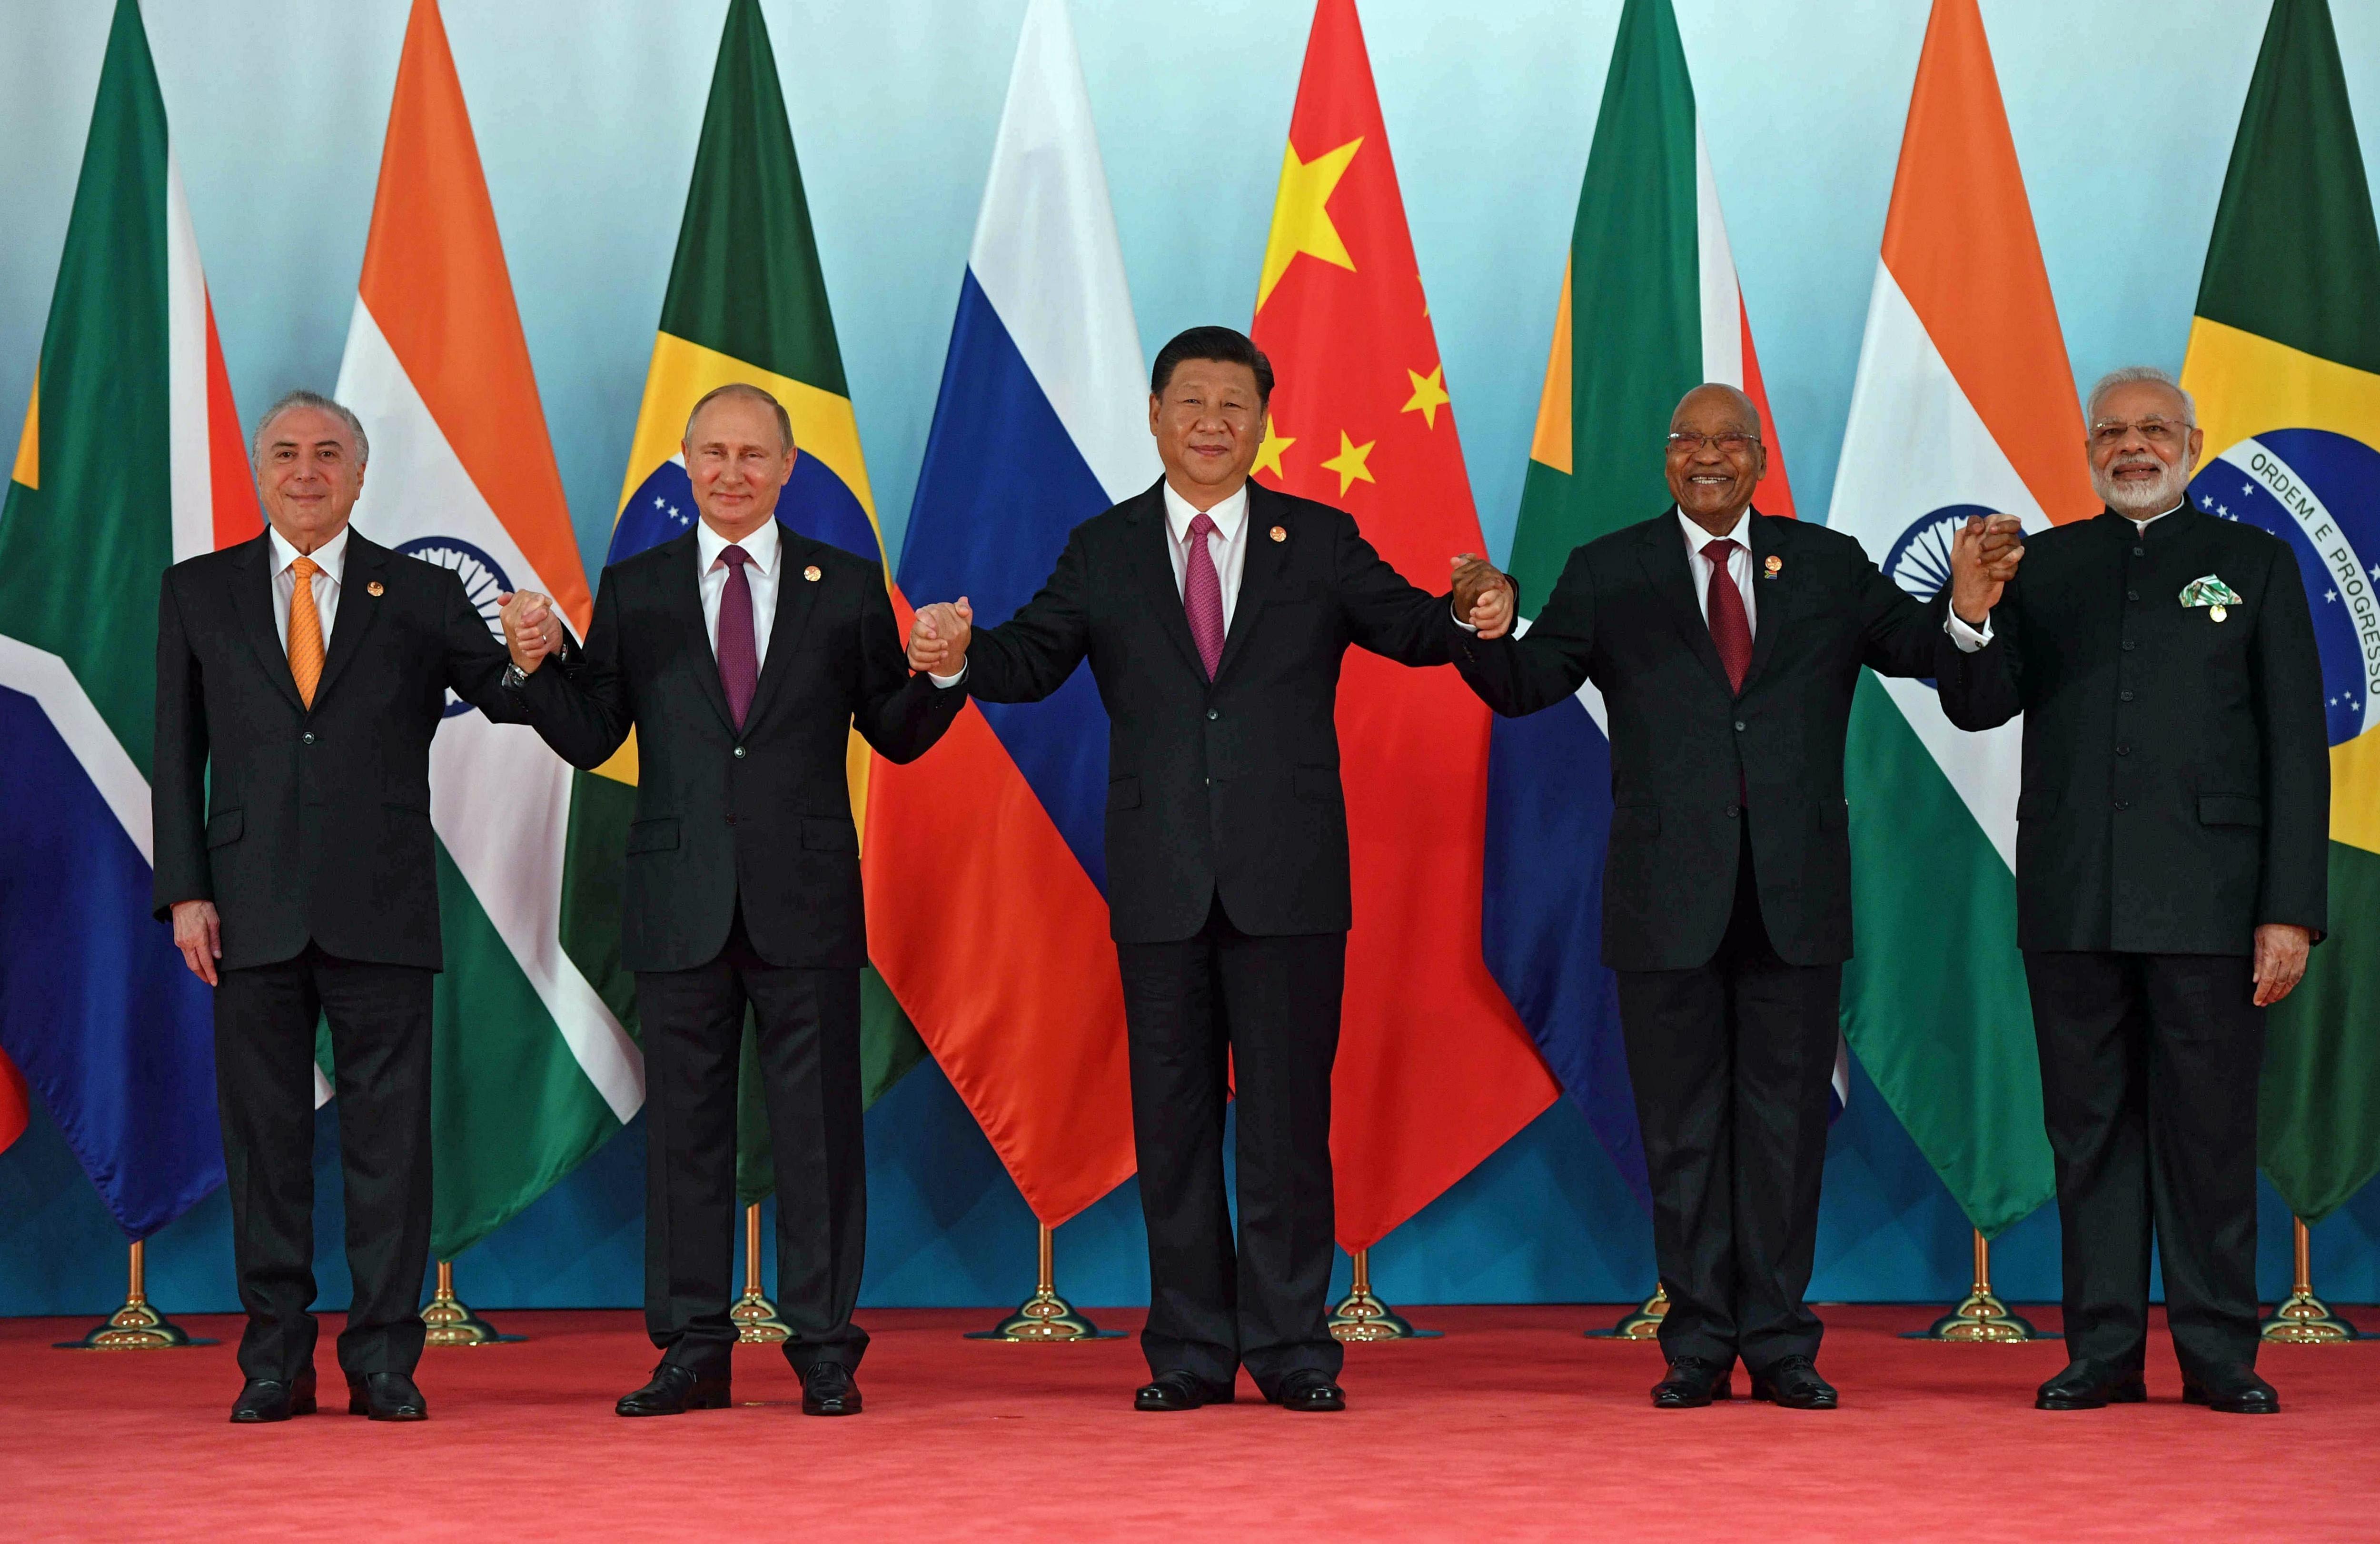 La IX Cimera dels BRICS debat la creació d’un BRICS Plus